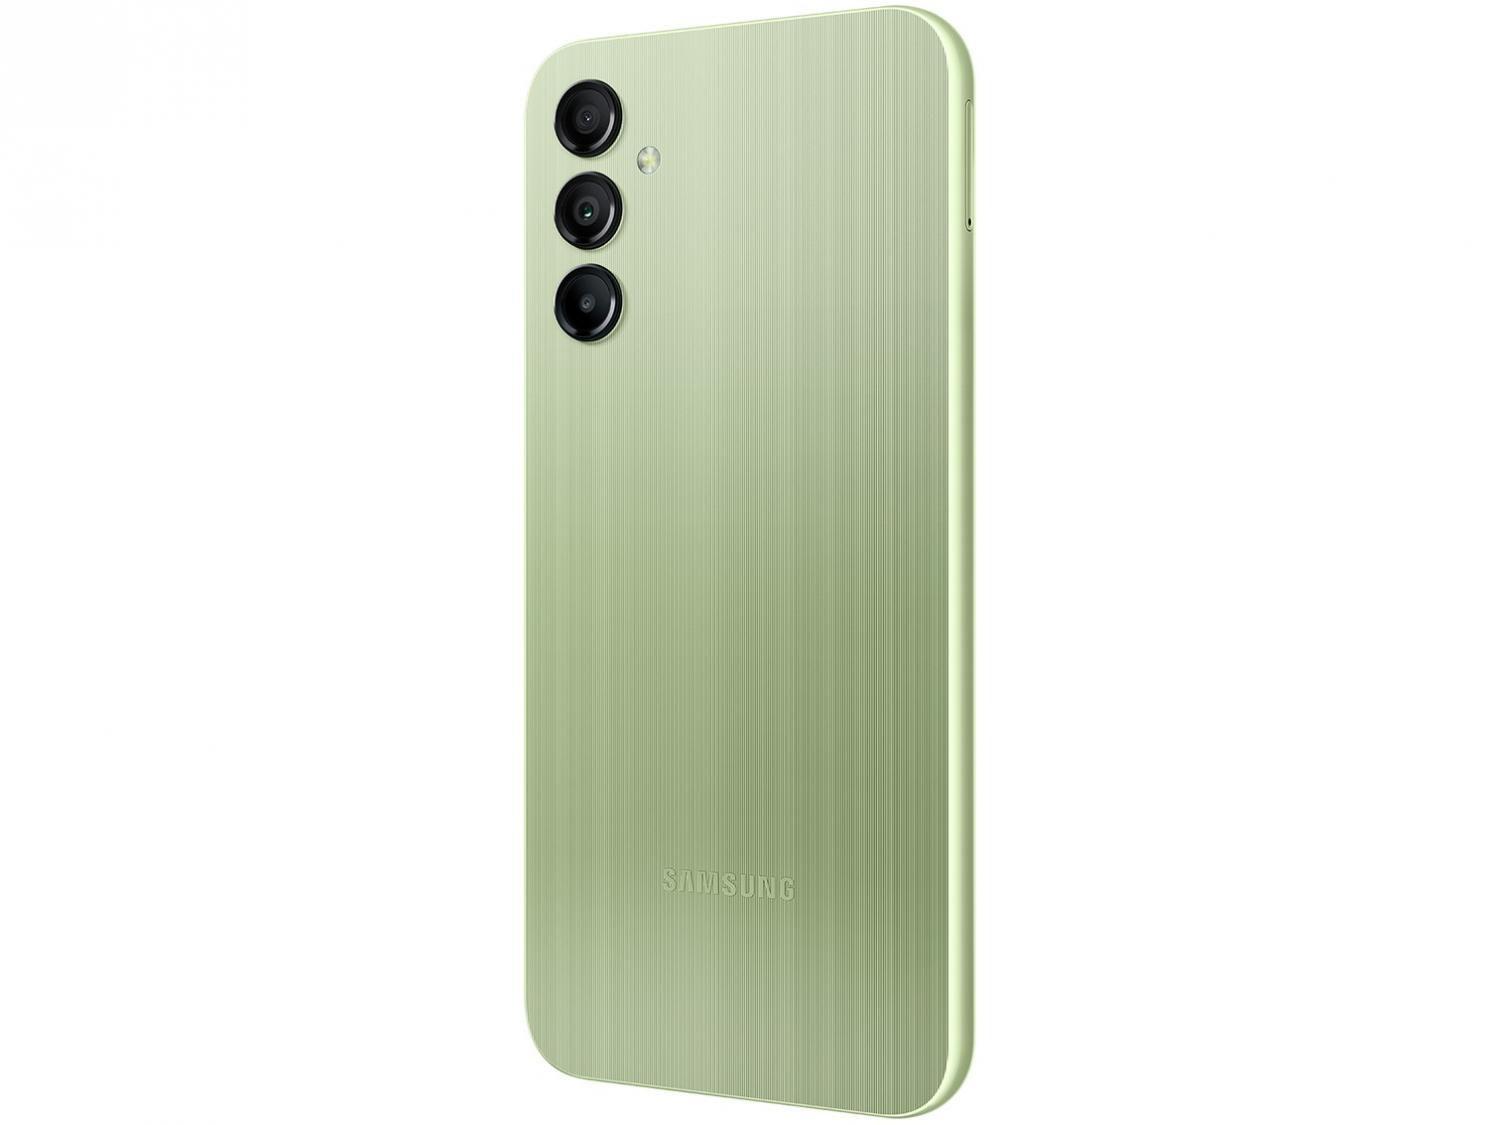 Samsung Galaxy A14 5G Lime (4GB / 64GB)